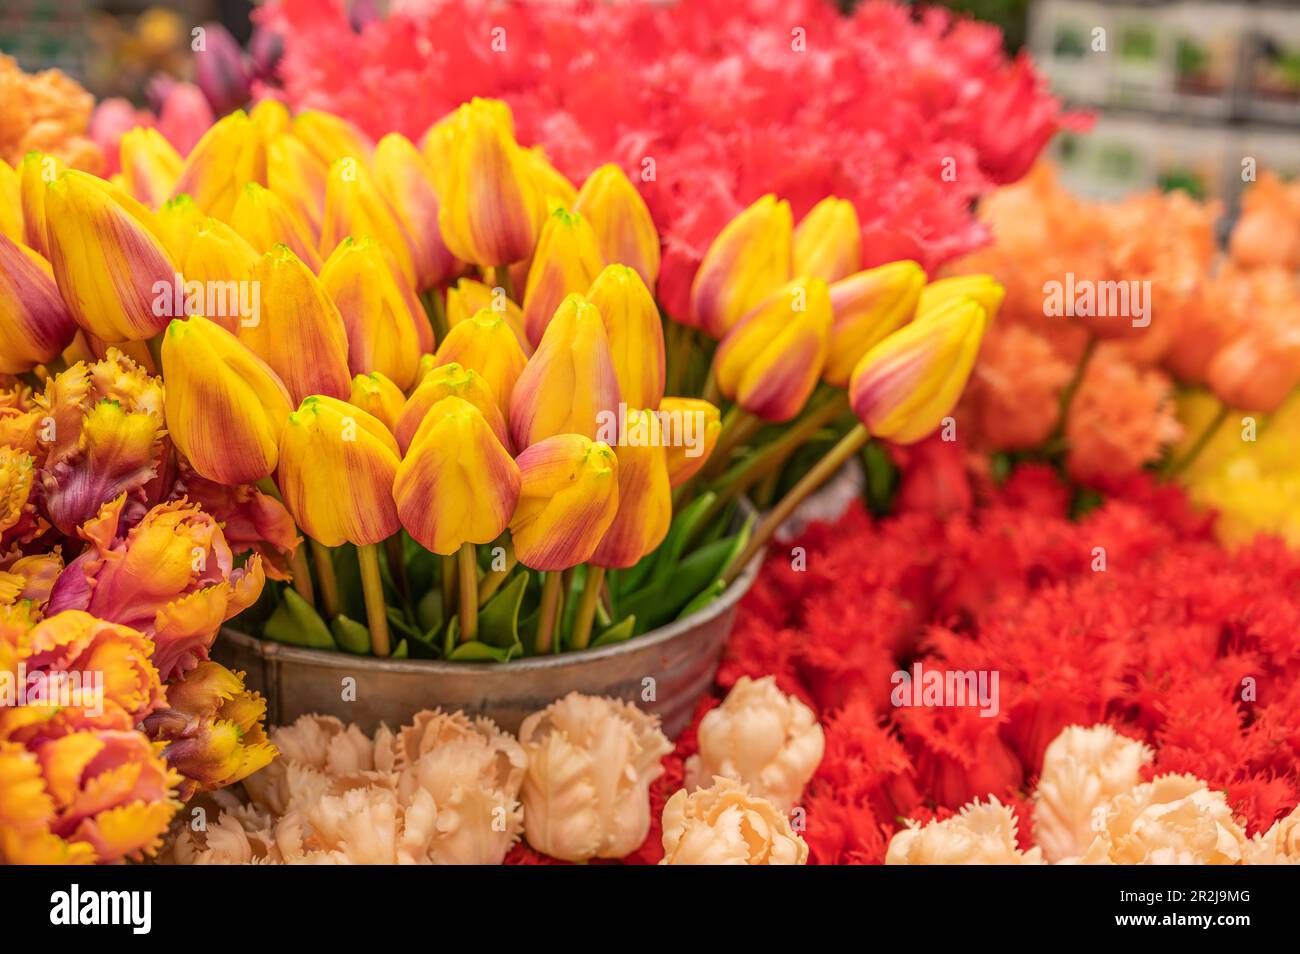 Tulipanes en el mercado de flores en el Singel, Amsterdam, Benelux, Benelux Estados, Holanda Septentrional, Noord-Holland, Países Bajos Foto de stock